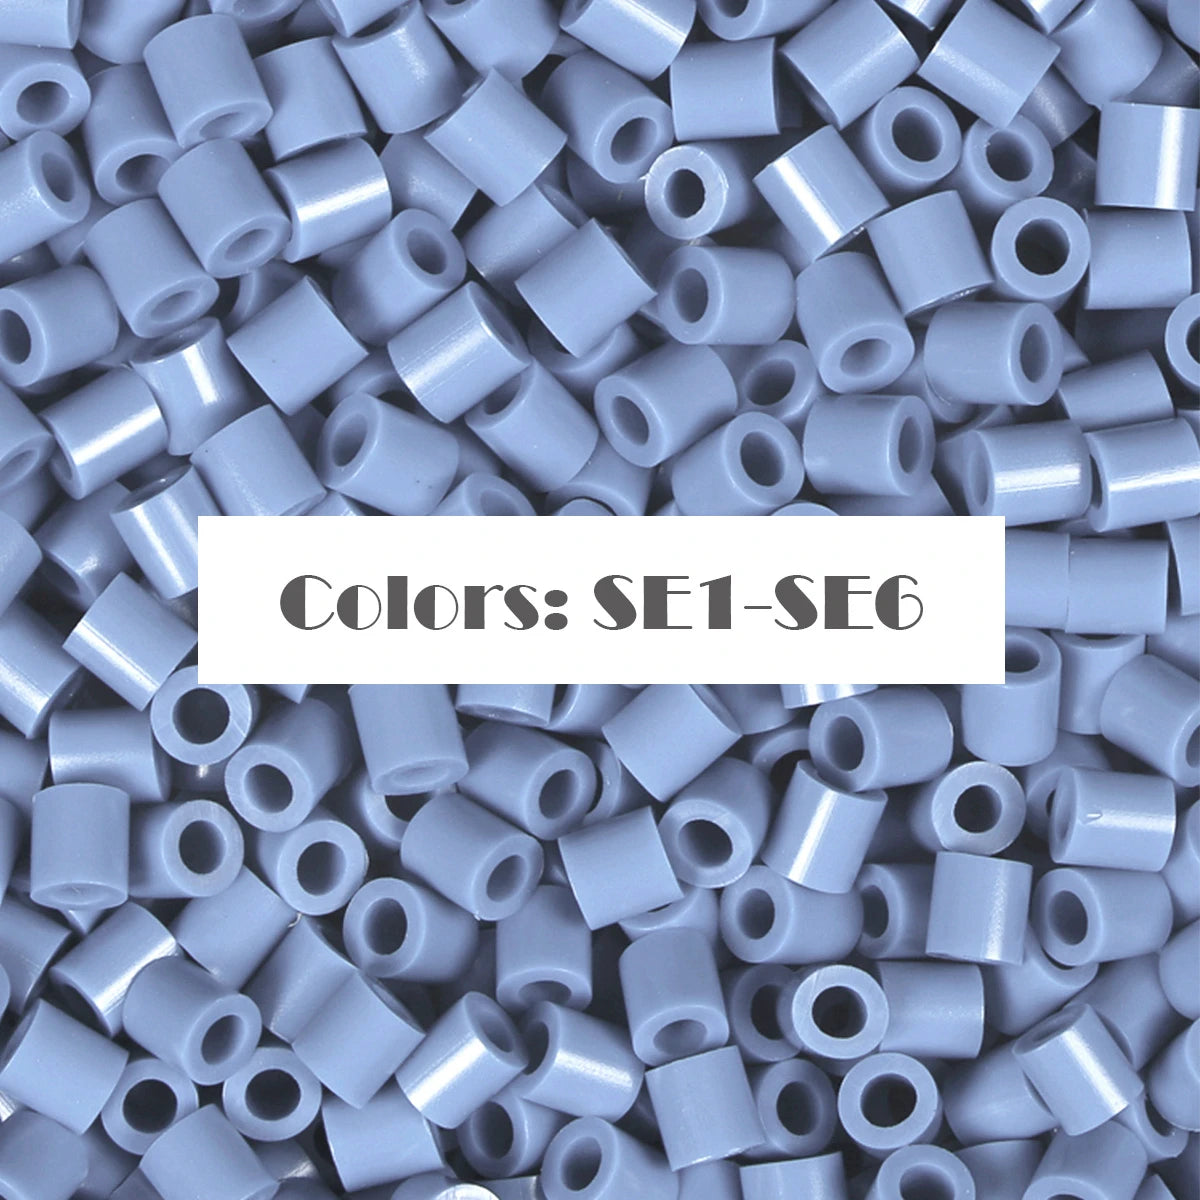 (SE1-SE6) Nuova serie di colori Blu S-1KG alla rinfusa